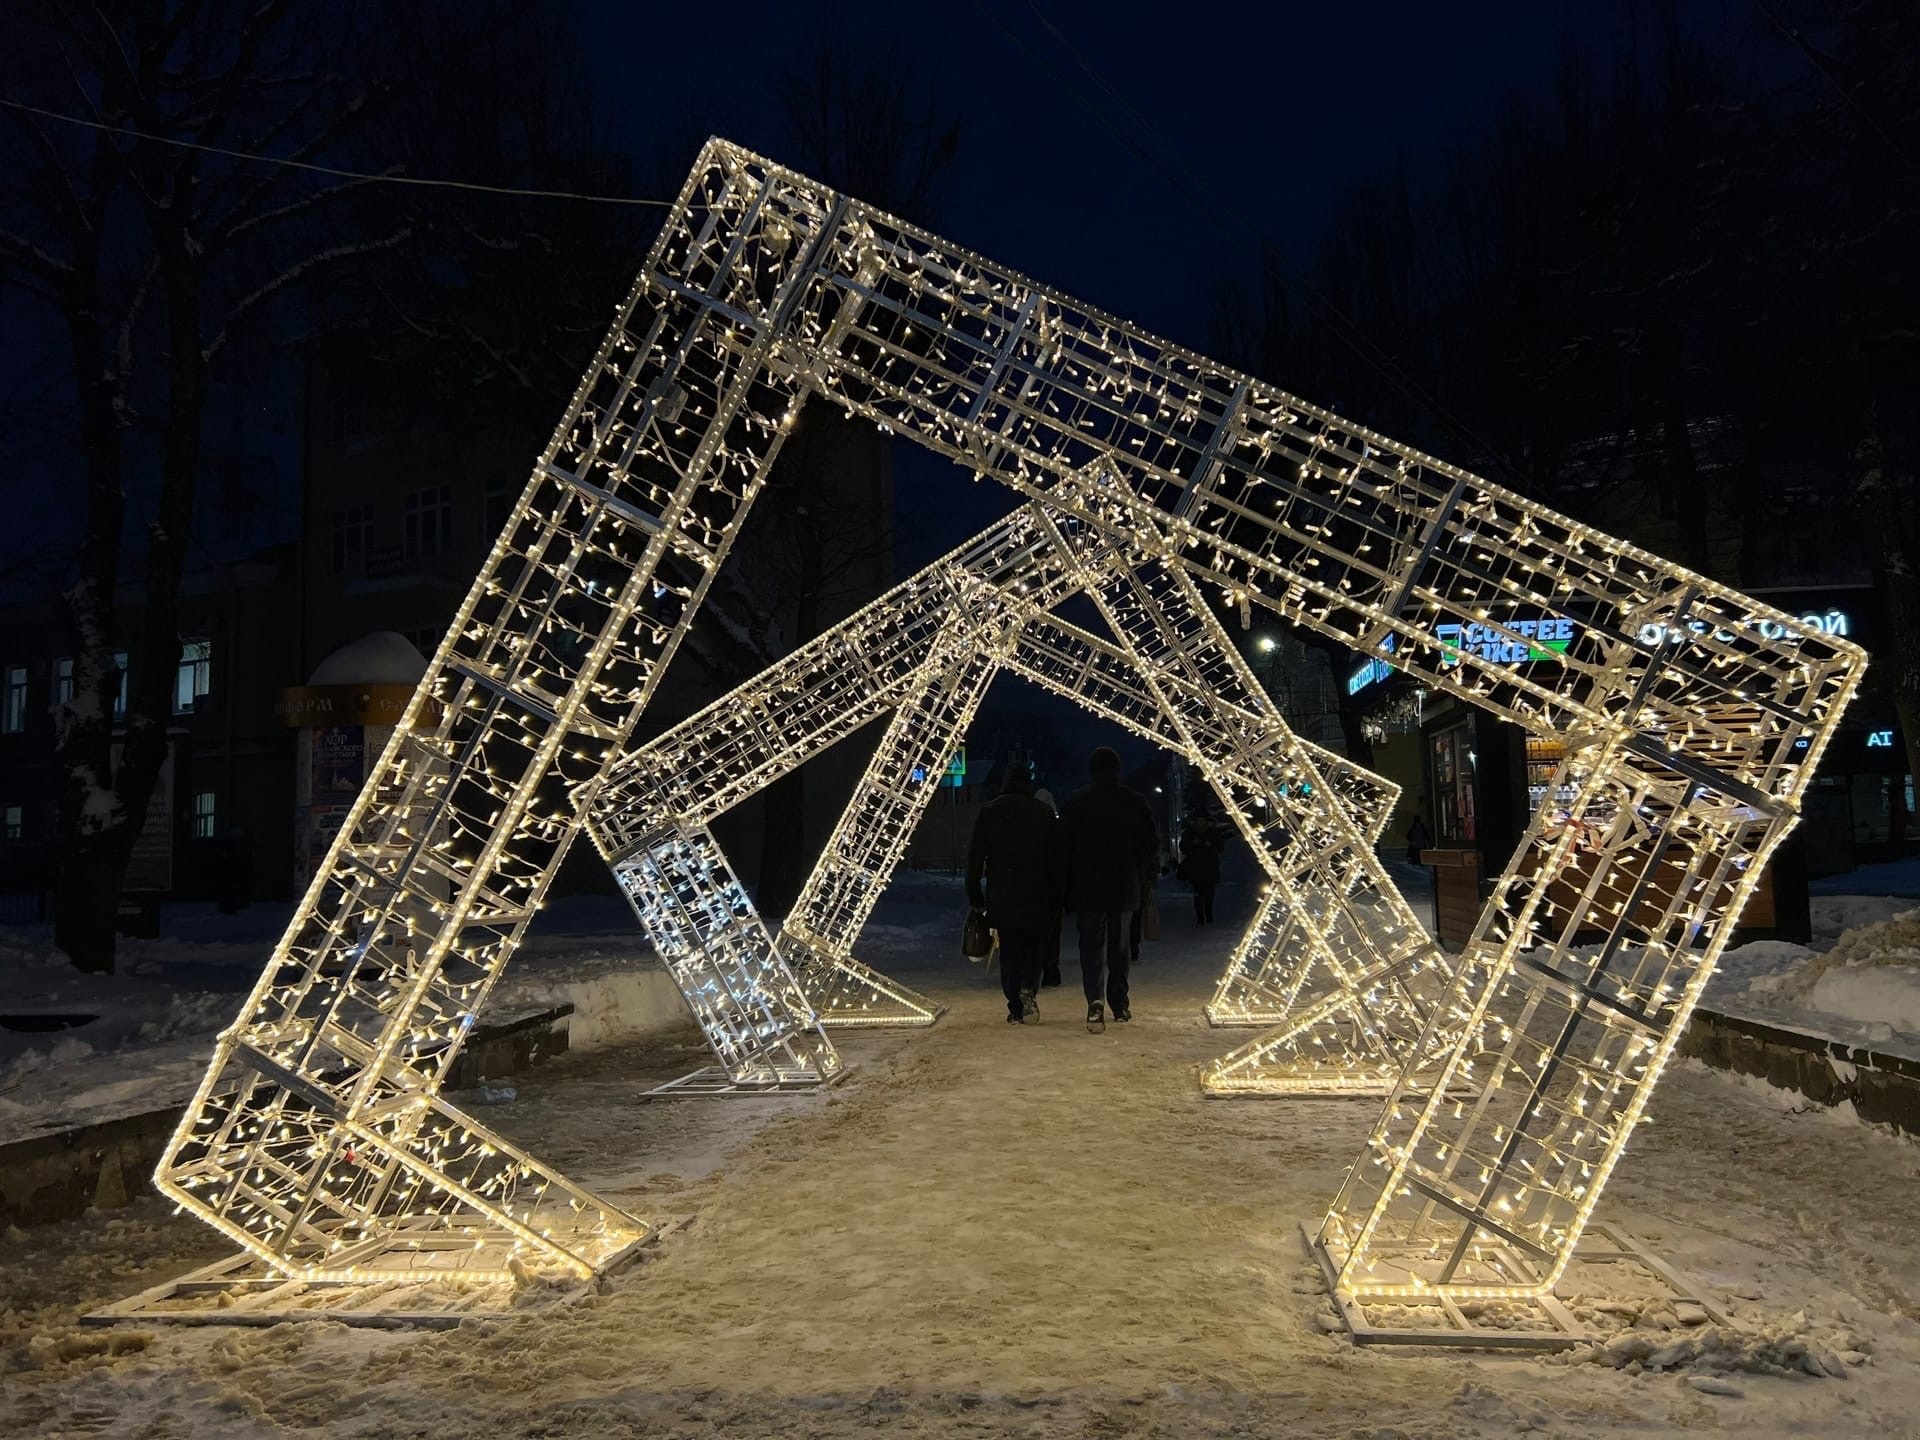 В Смоленске на Октябрьской революции установили светящуюся тройную арку